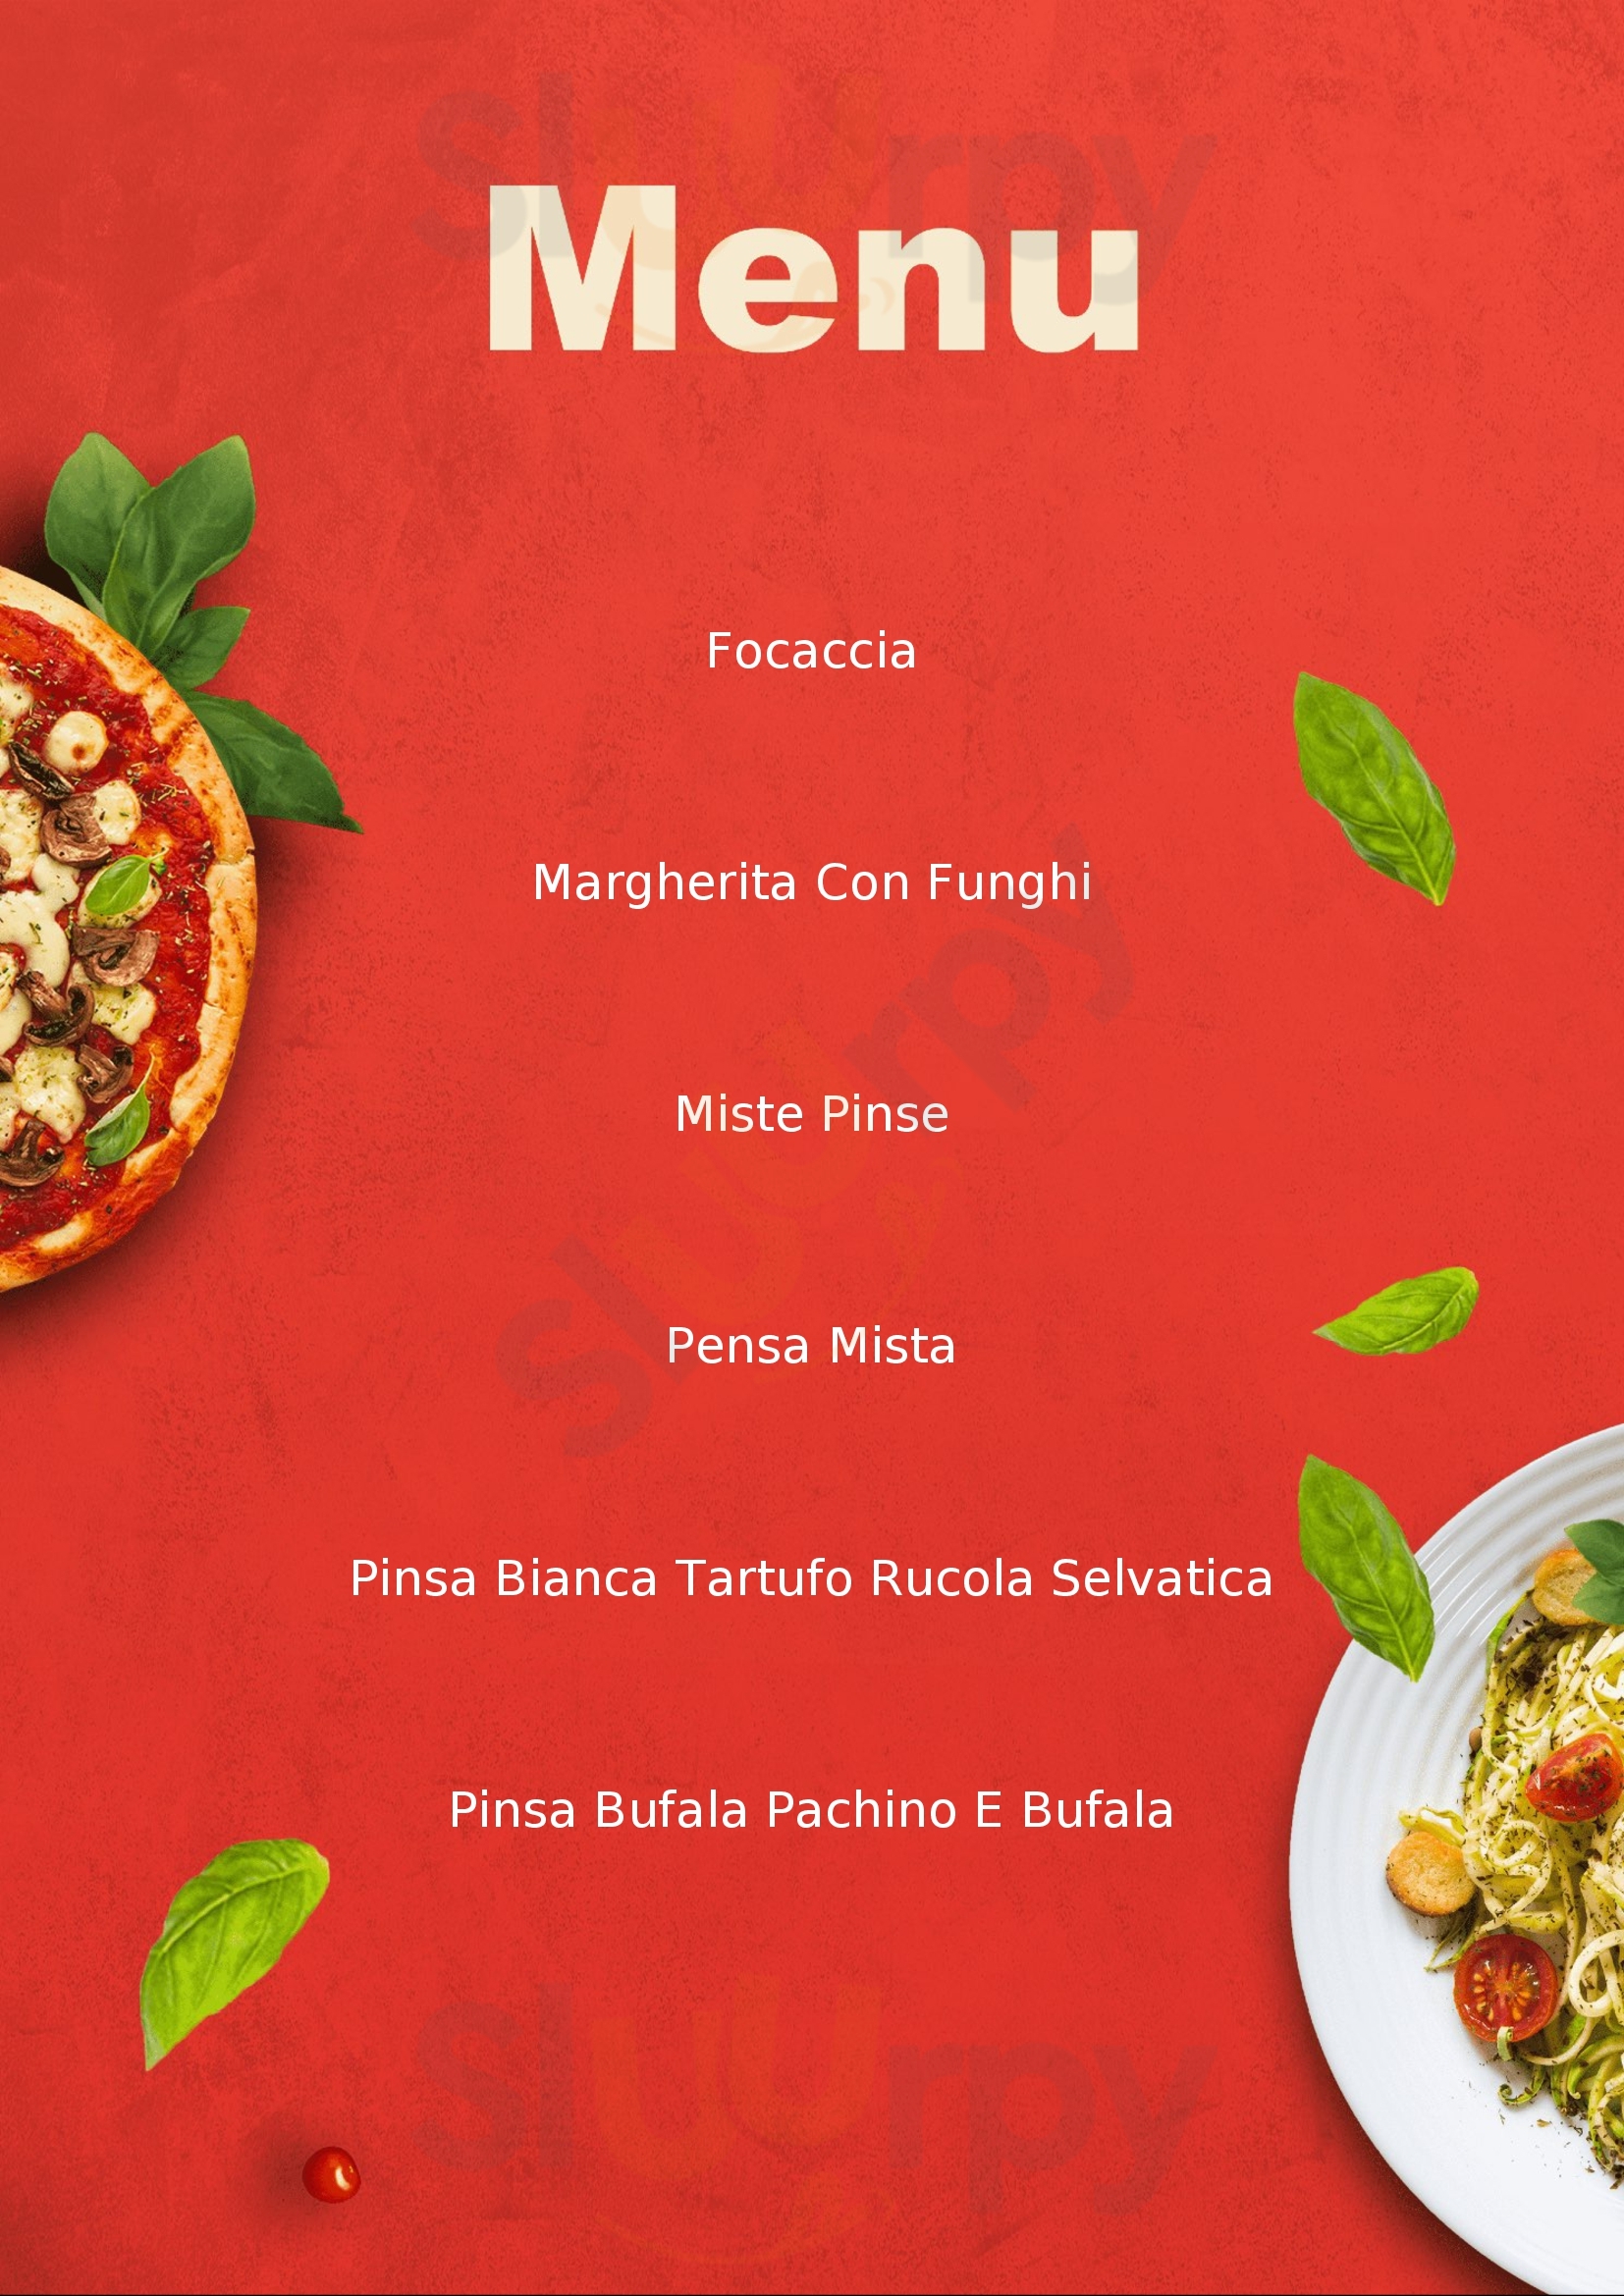 Pizzamania Itala menù 1 pagina